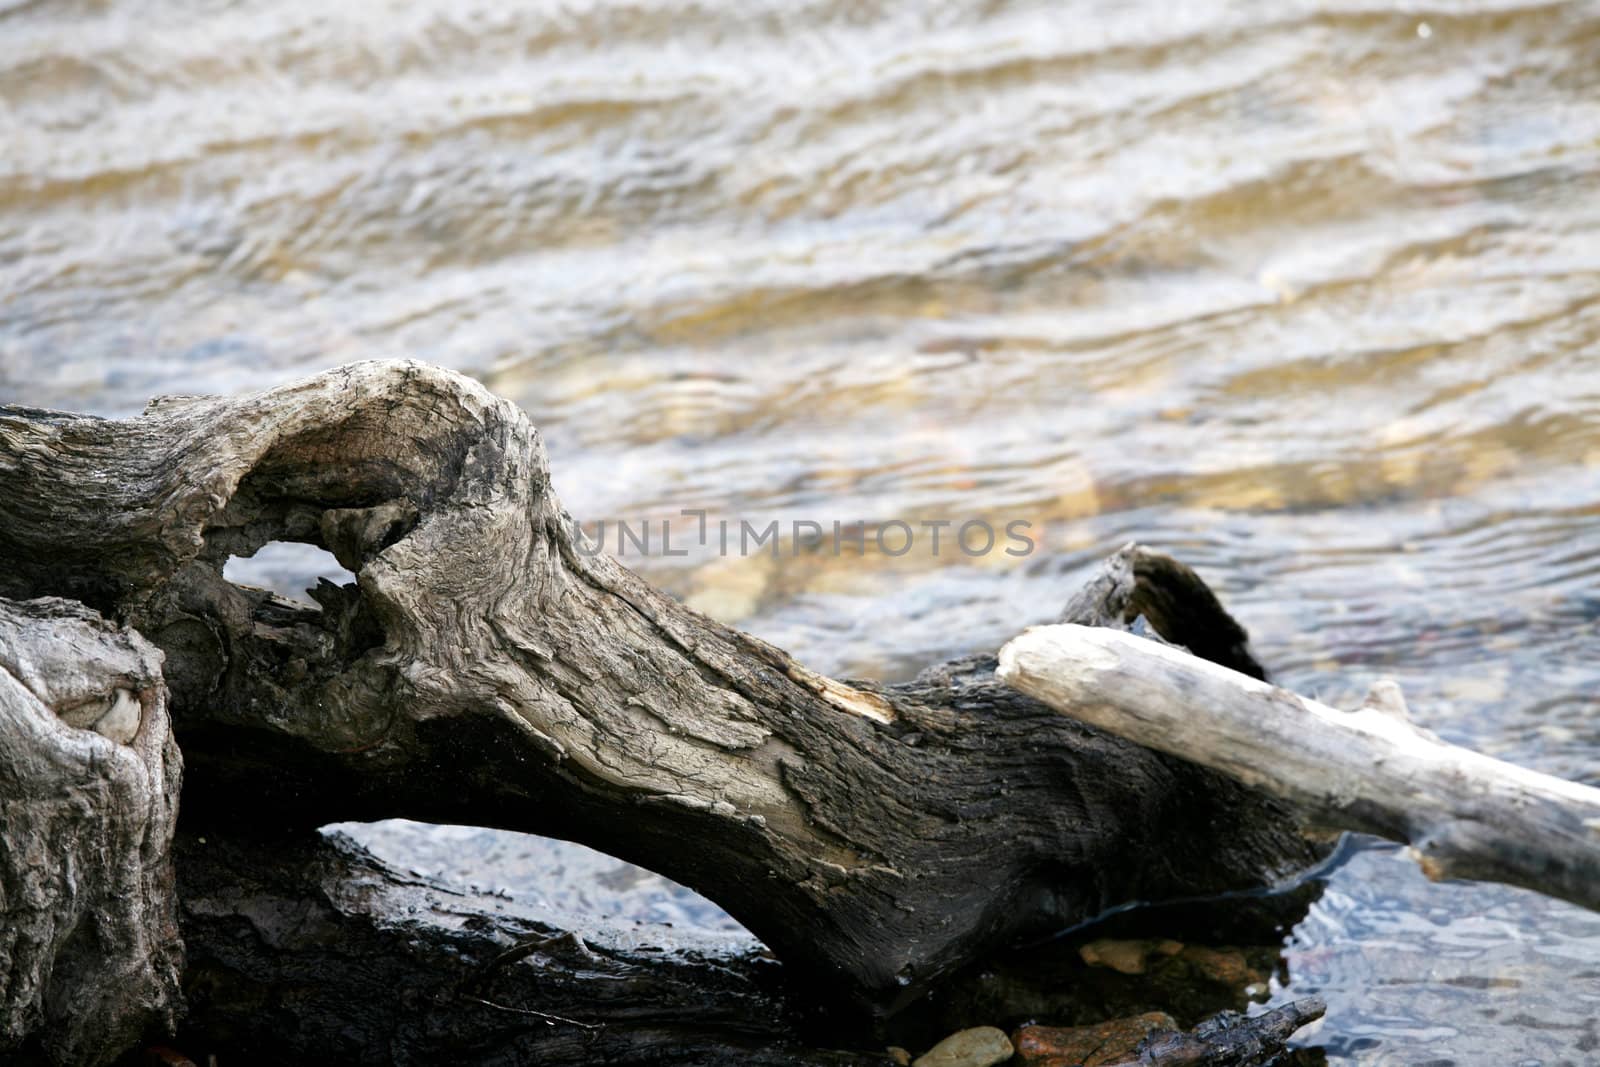 Fallen twisted log in river by jarenwicklund